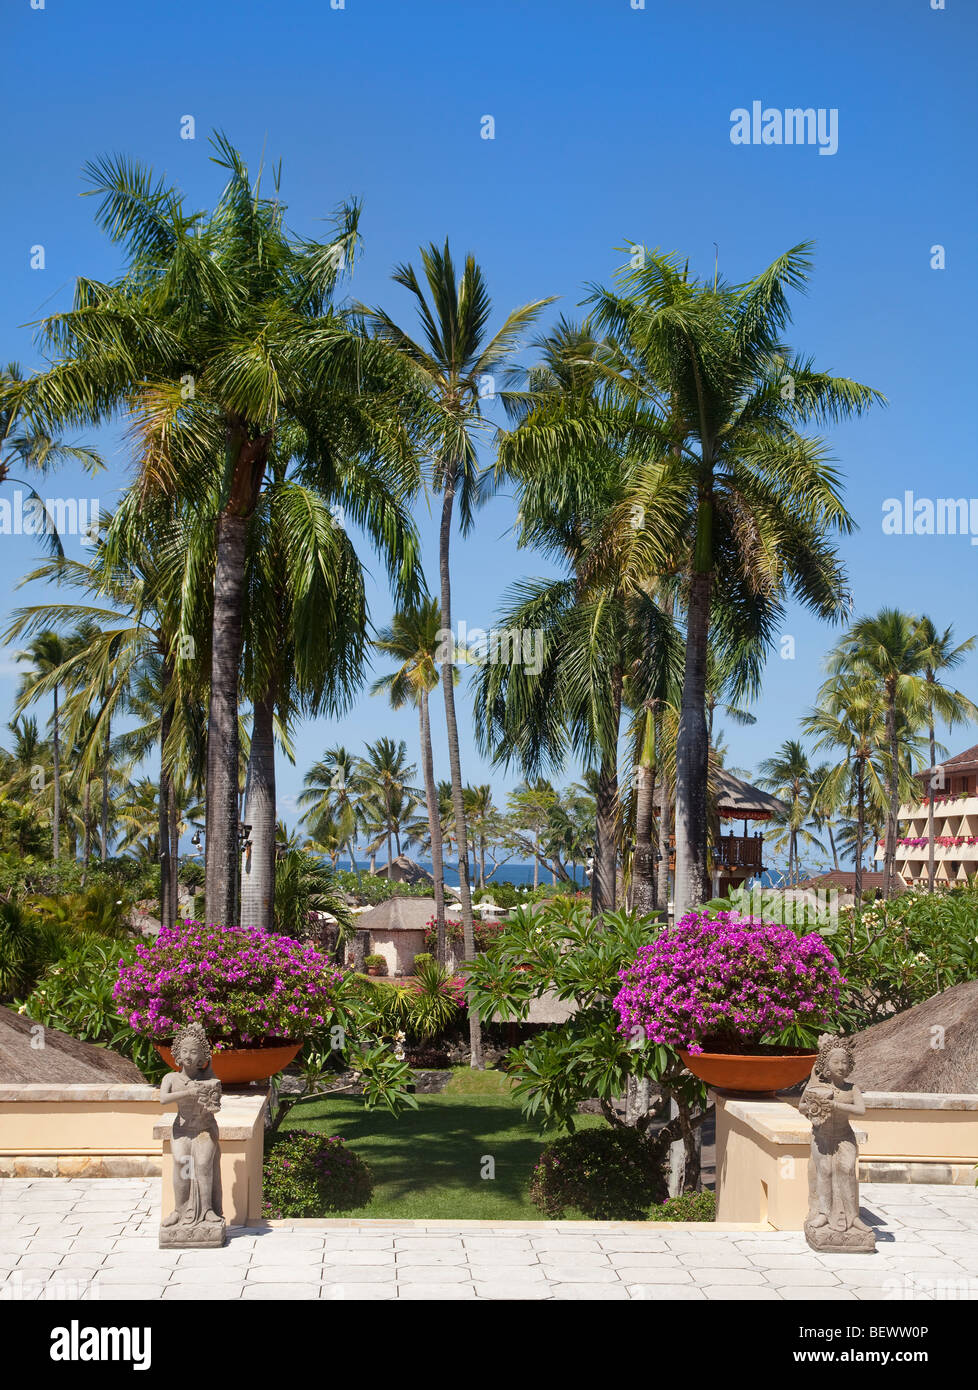 Hotel a 5 stelle motivi, Bali, Indonesia. Luminosa giornata di sole, palme, spiaggia in background Foto Stock